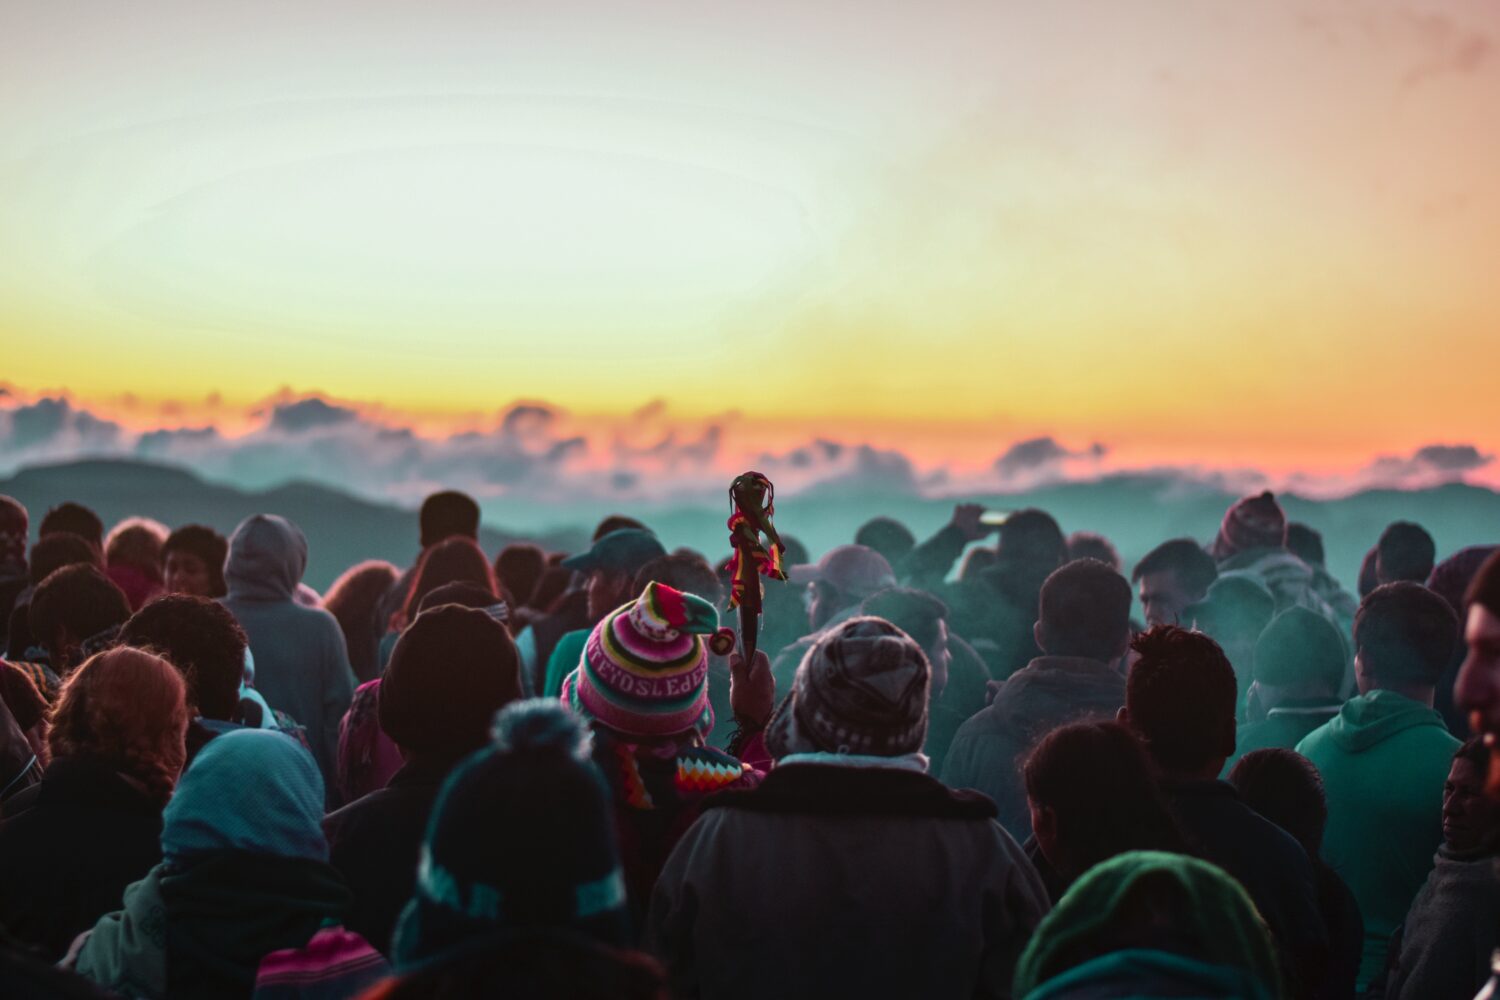 Menschen schauen einen Sonnenuntergang an, viele tragen bolivianische Mützen, einer hält ein Zepter